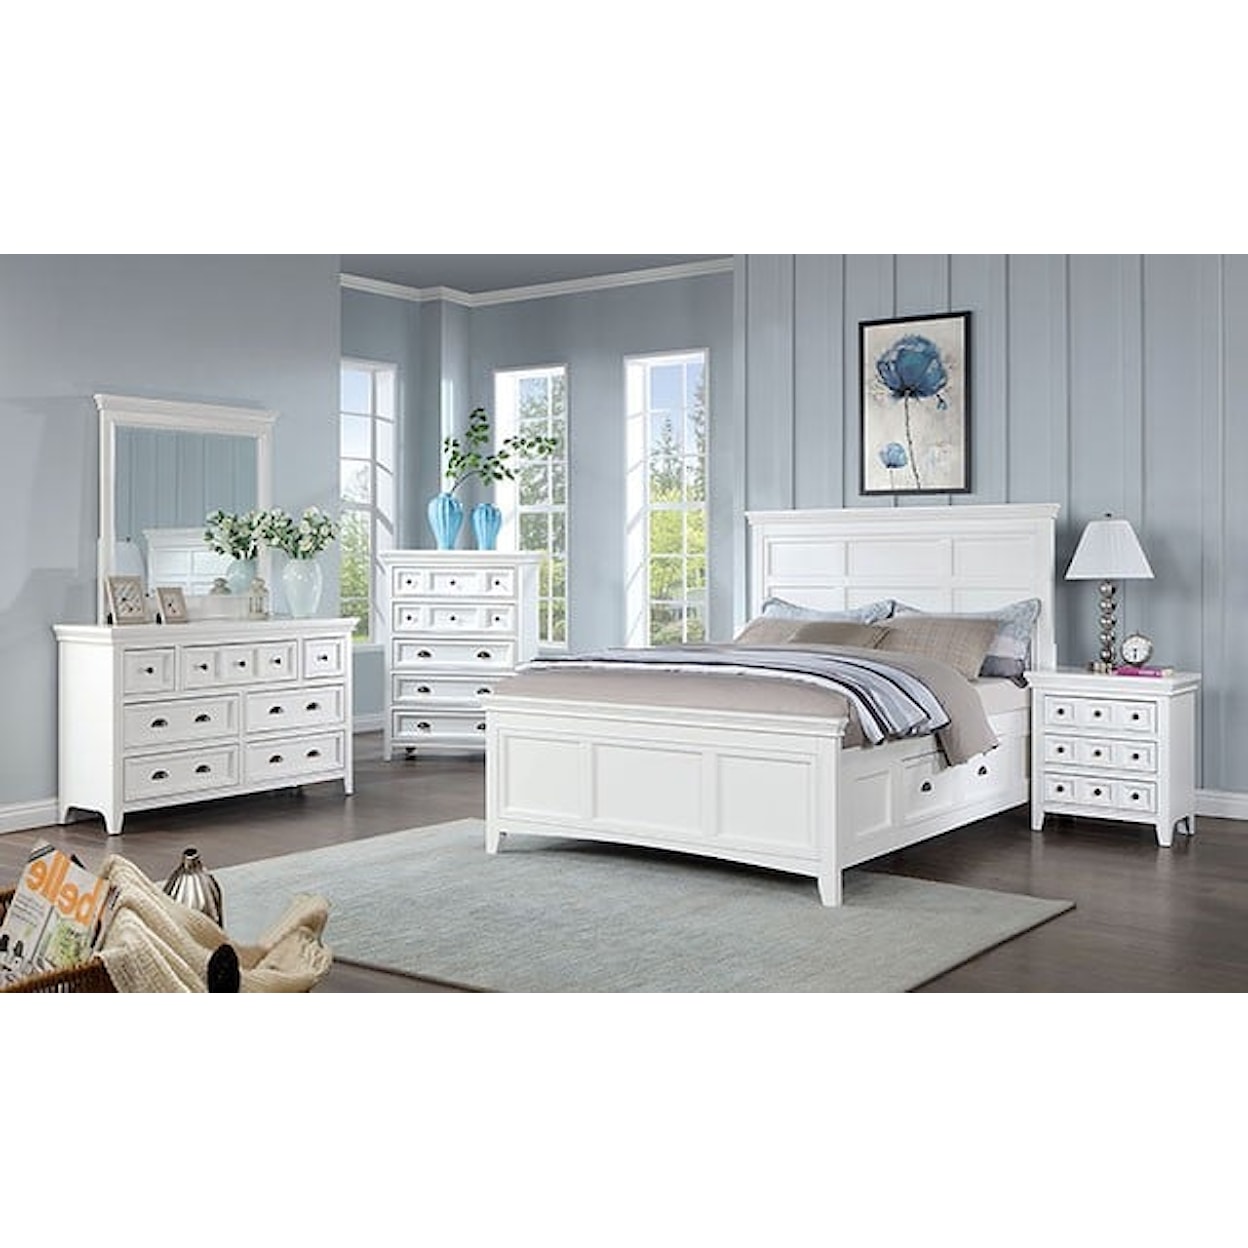 Furniture of America CASTILE 5-Drawer White Bedroom Chest